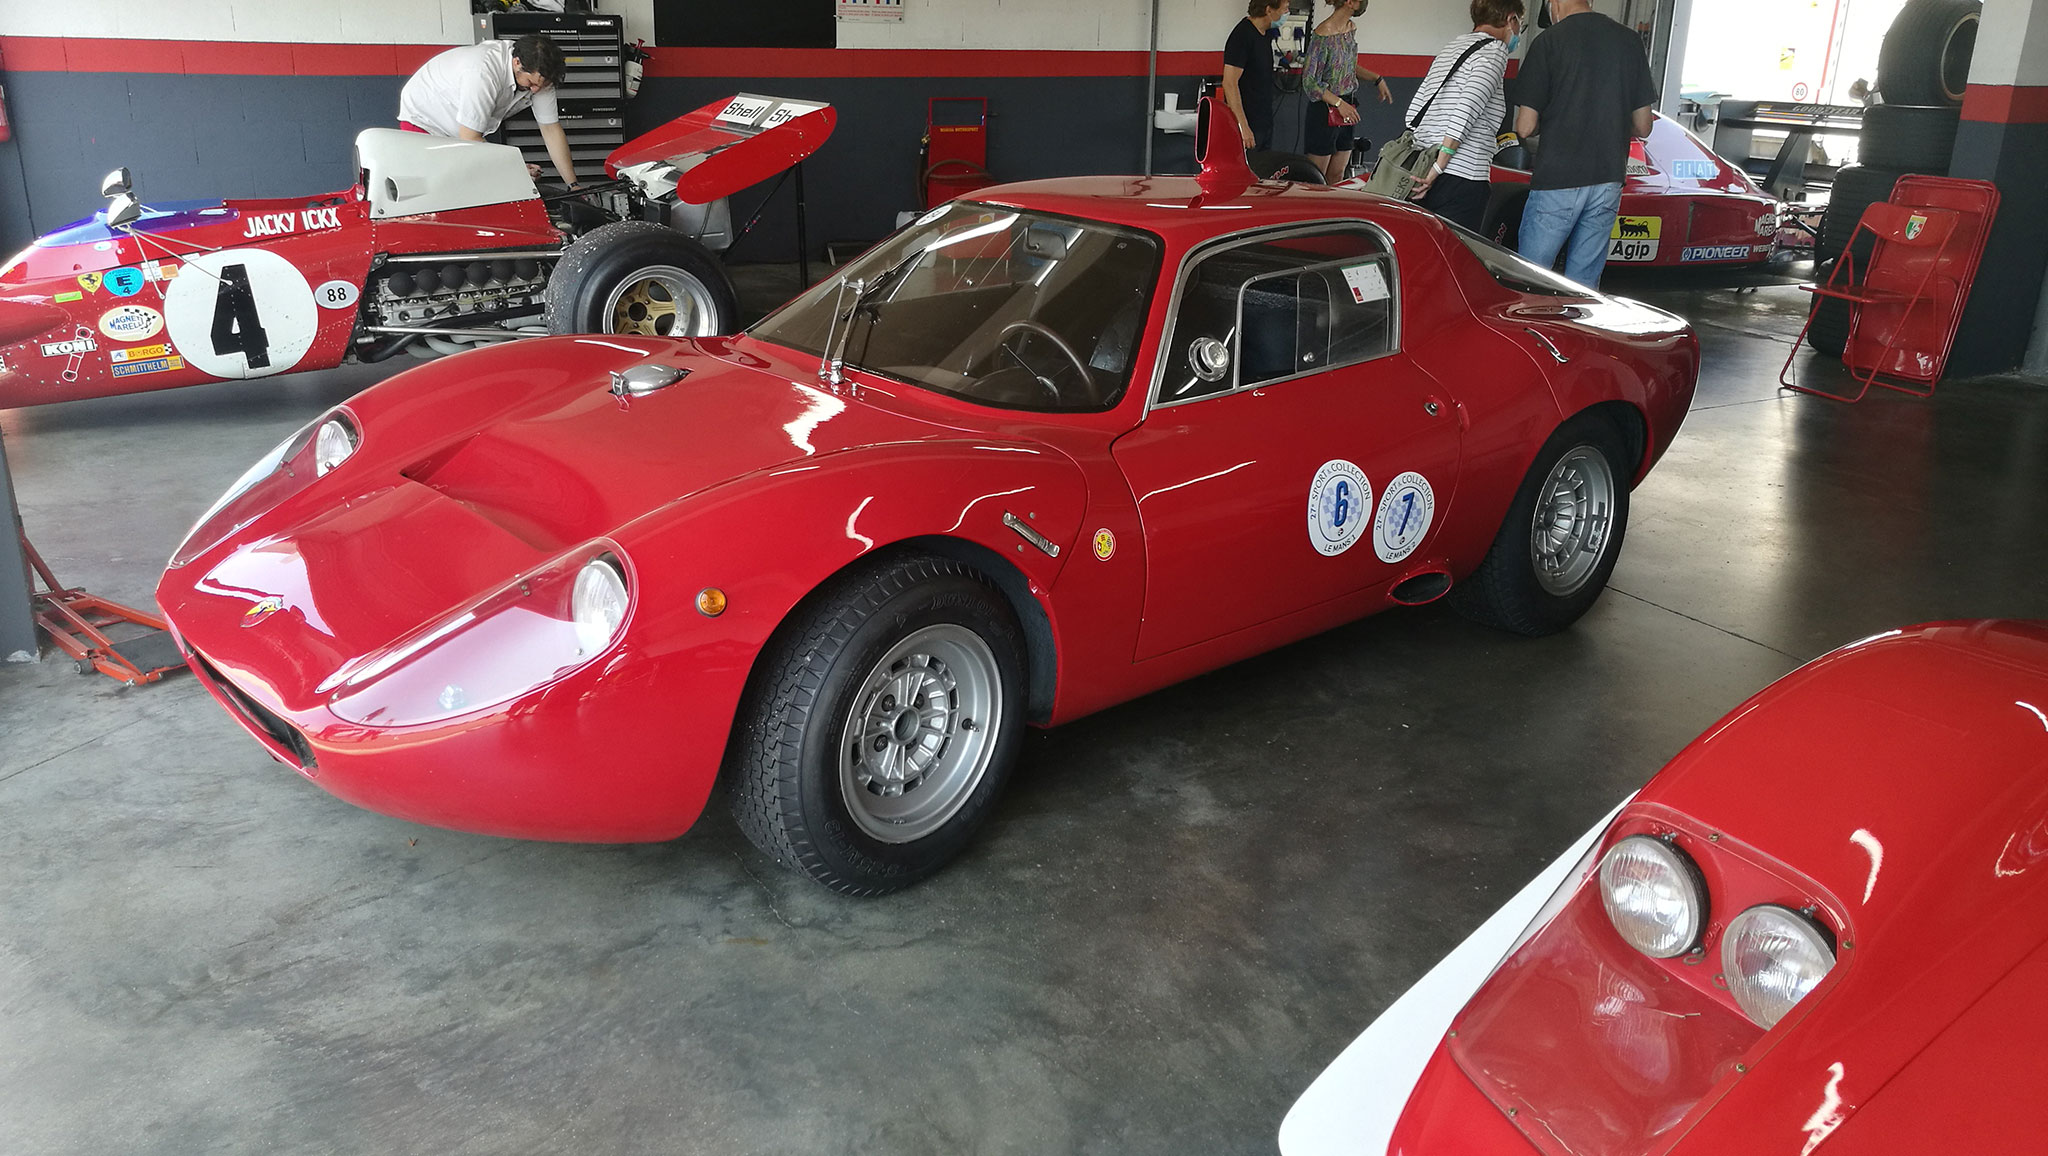 Des italiennes, mais pas que des Ferrari. Ici une Abarth 1300 OT - Sport et Collection 2021.